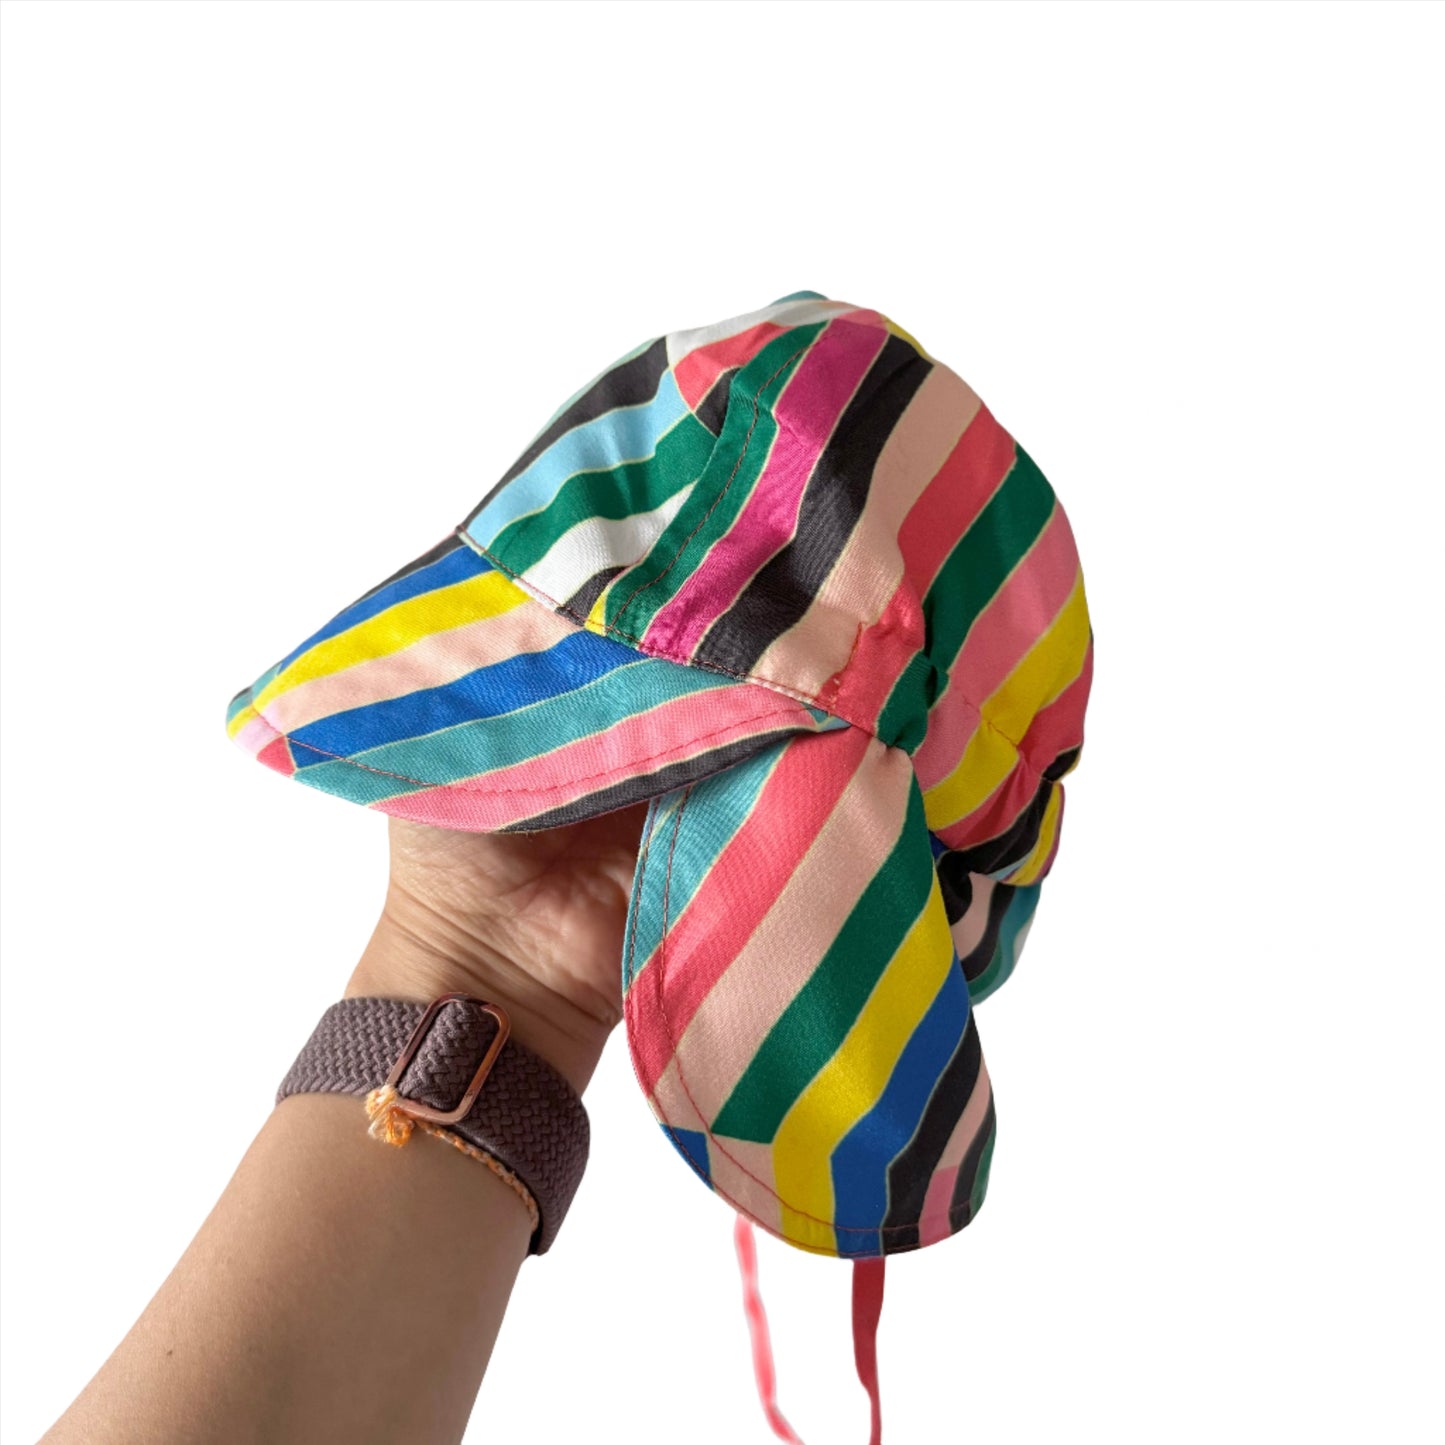 Tia Cibani / Sun hat - Colourful stripe / S(12-24M)